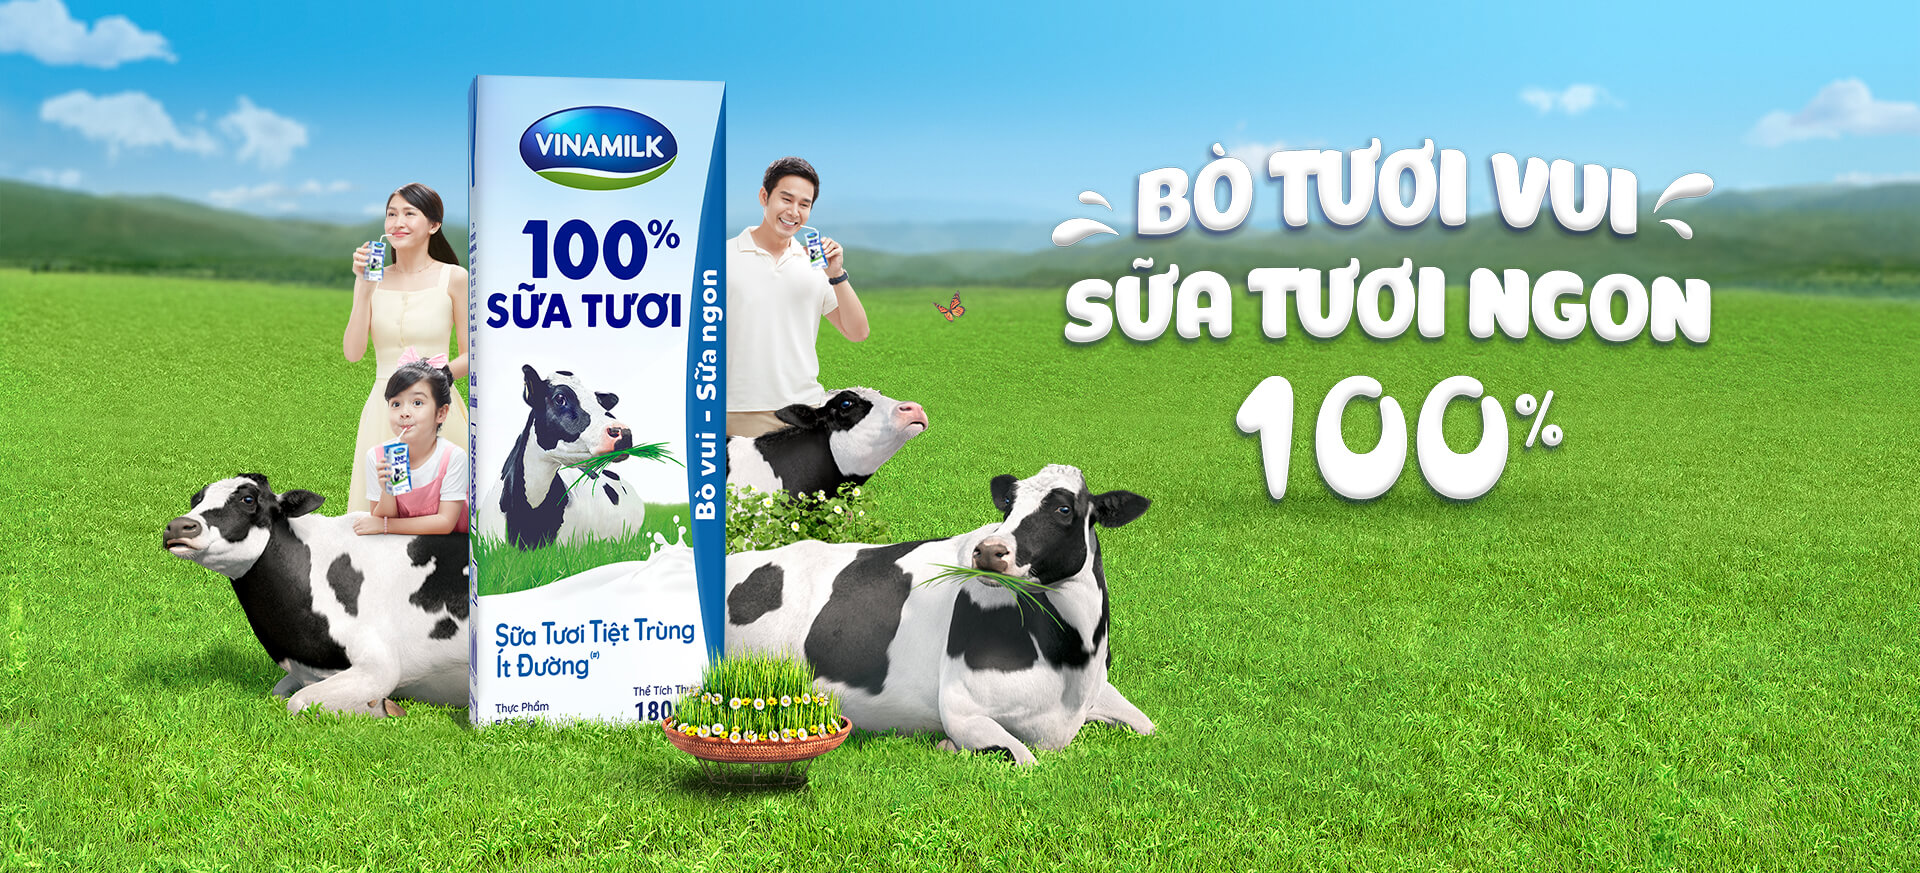 FM Đàn bò_Vinamilk 100% Sữa Tươi